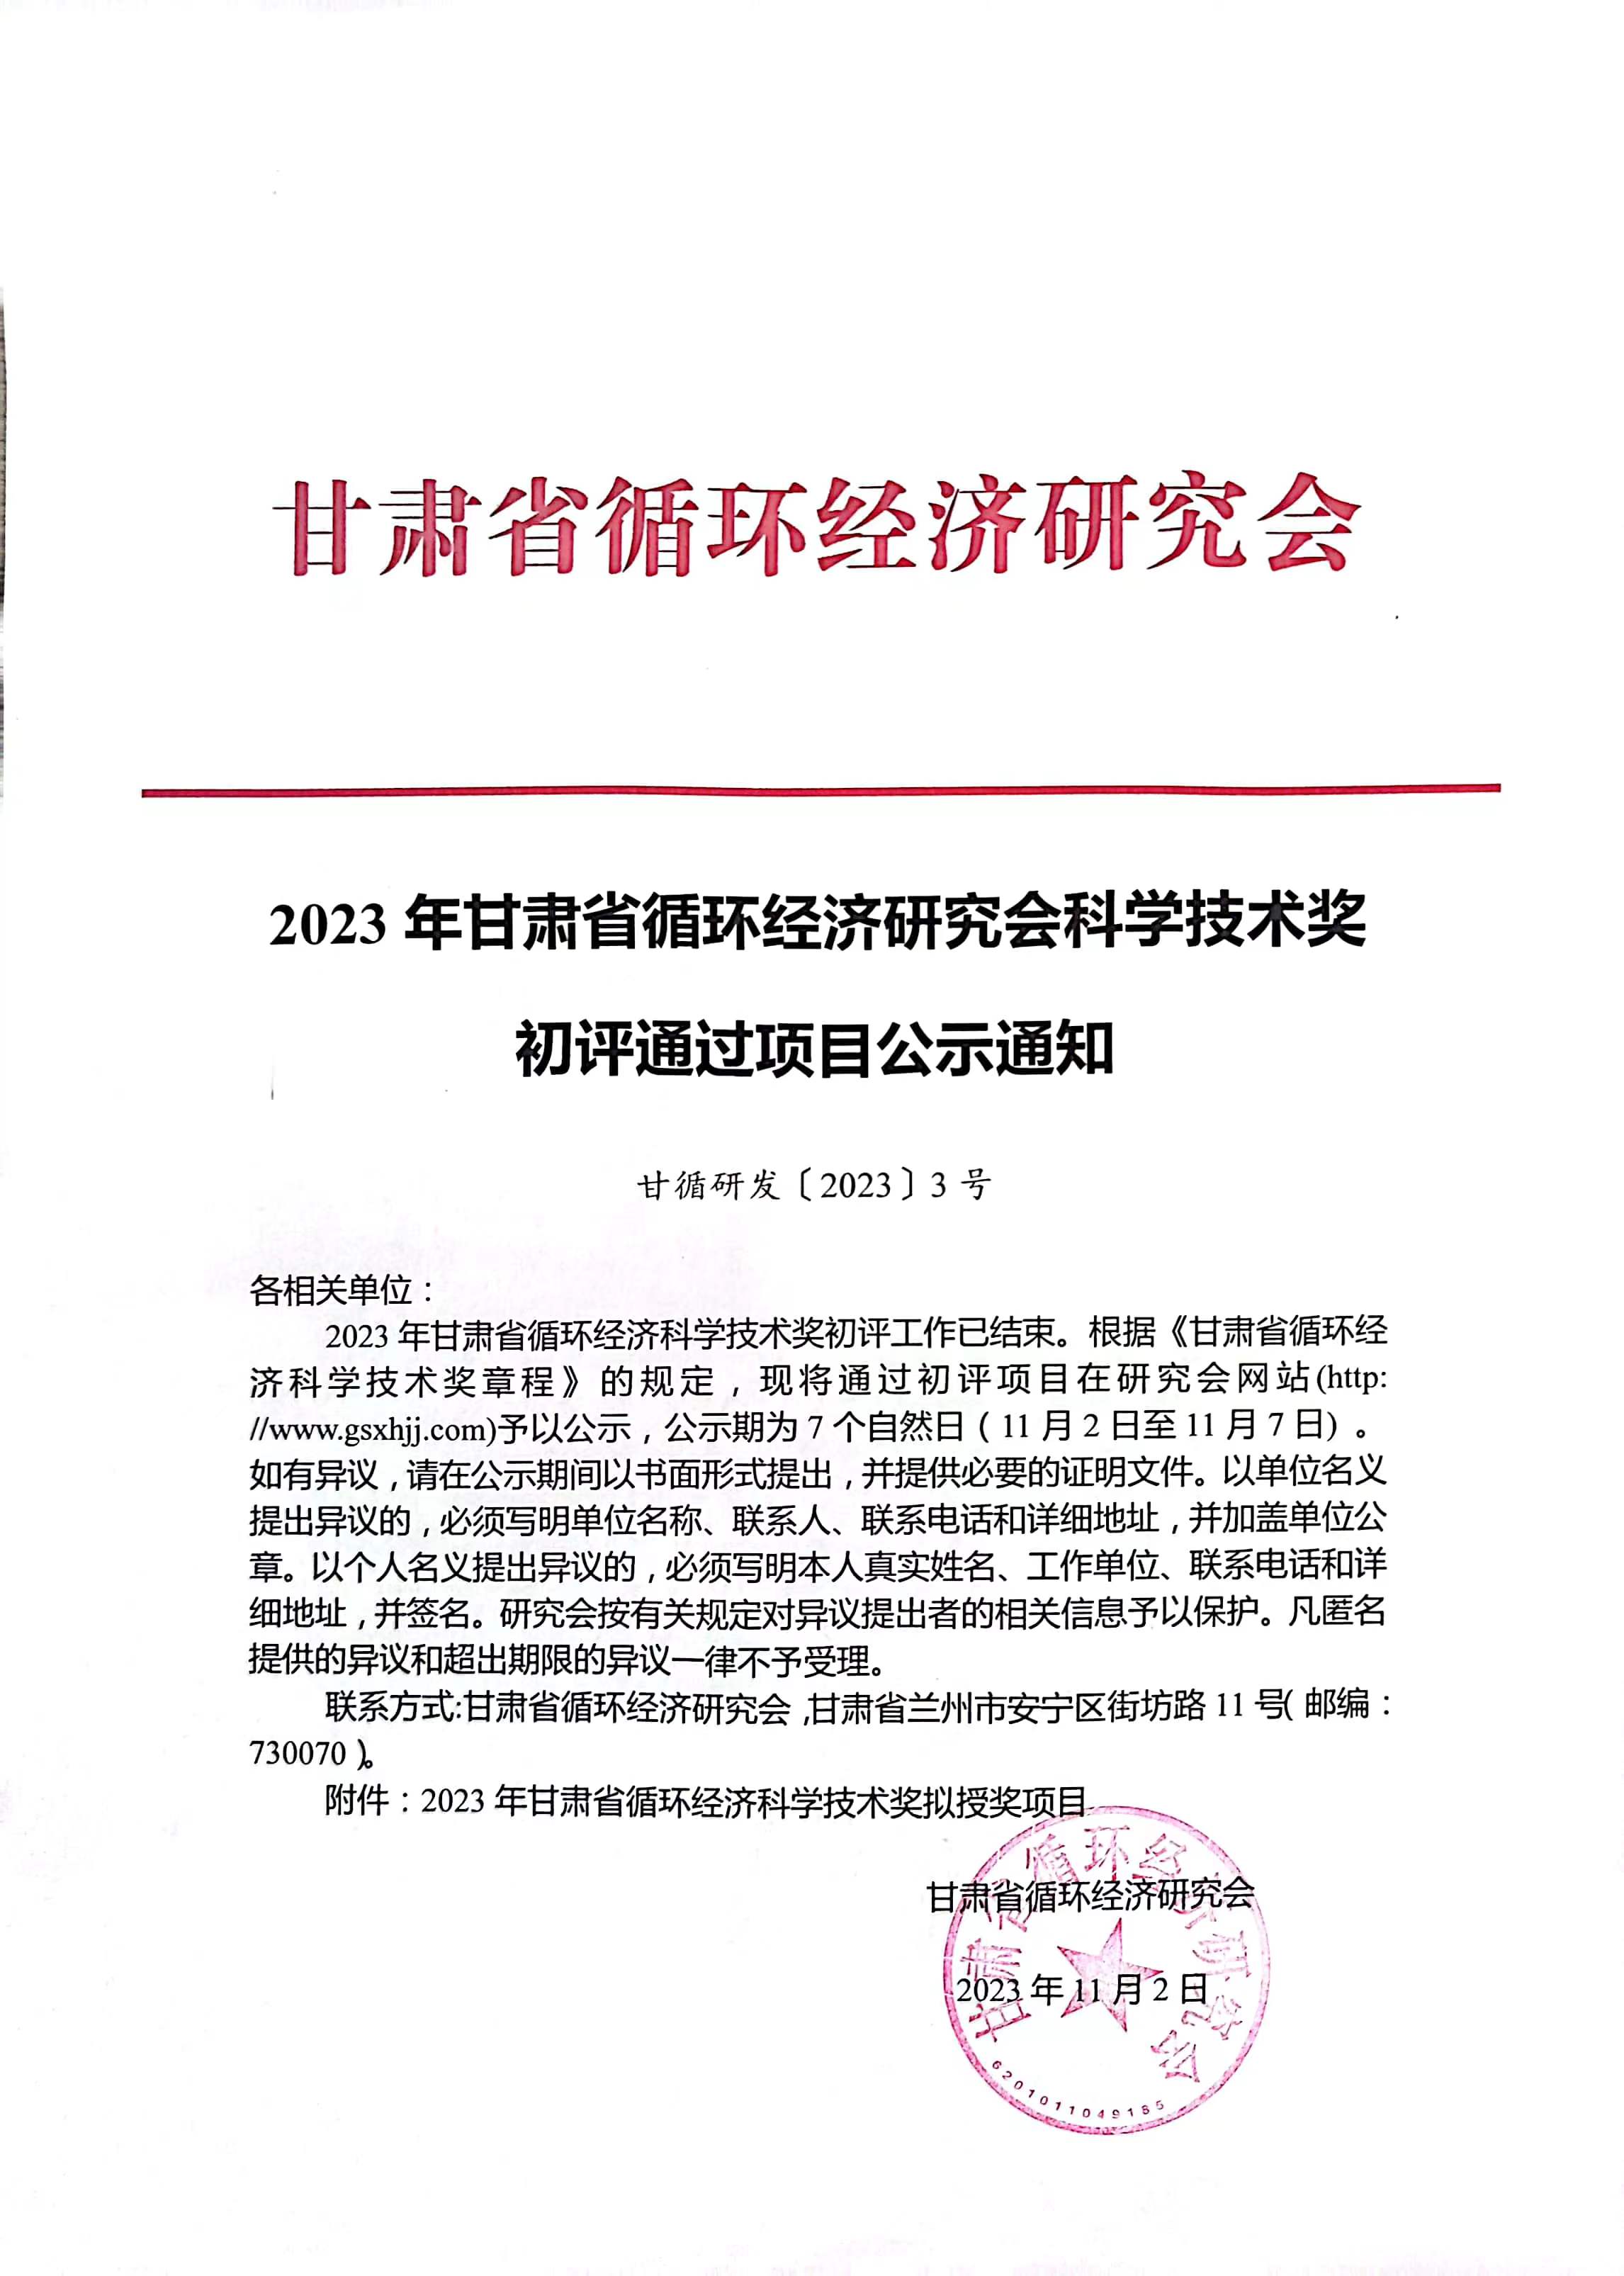 2023年甘肃省循环经济科学技术奖拟授奖项目